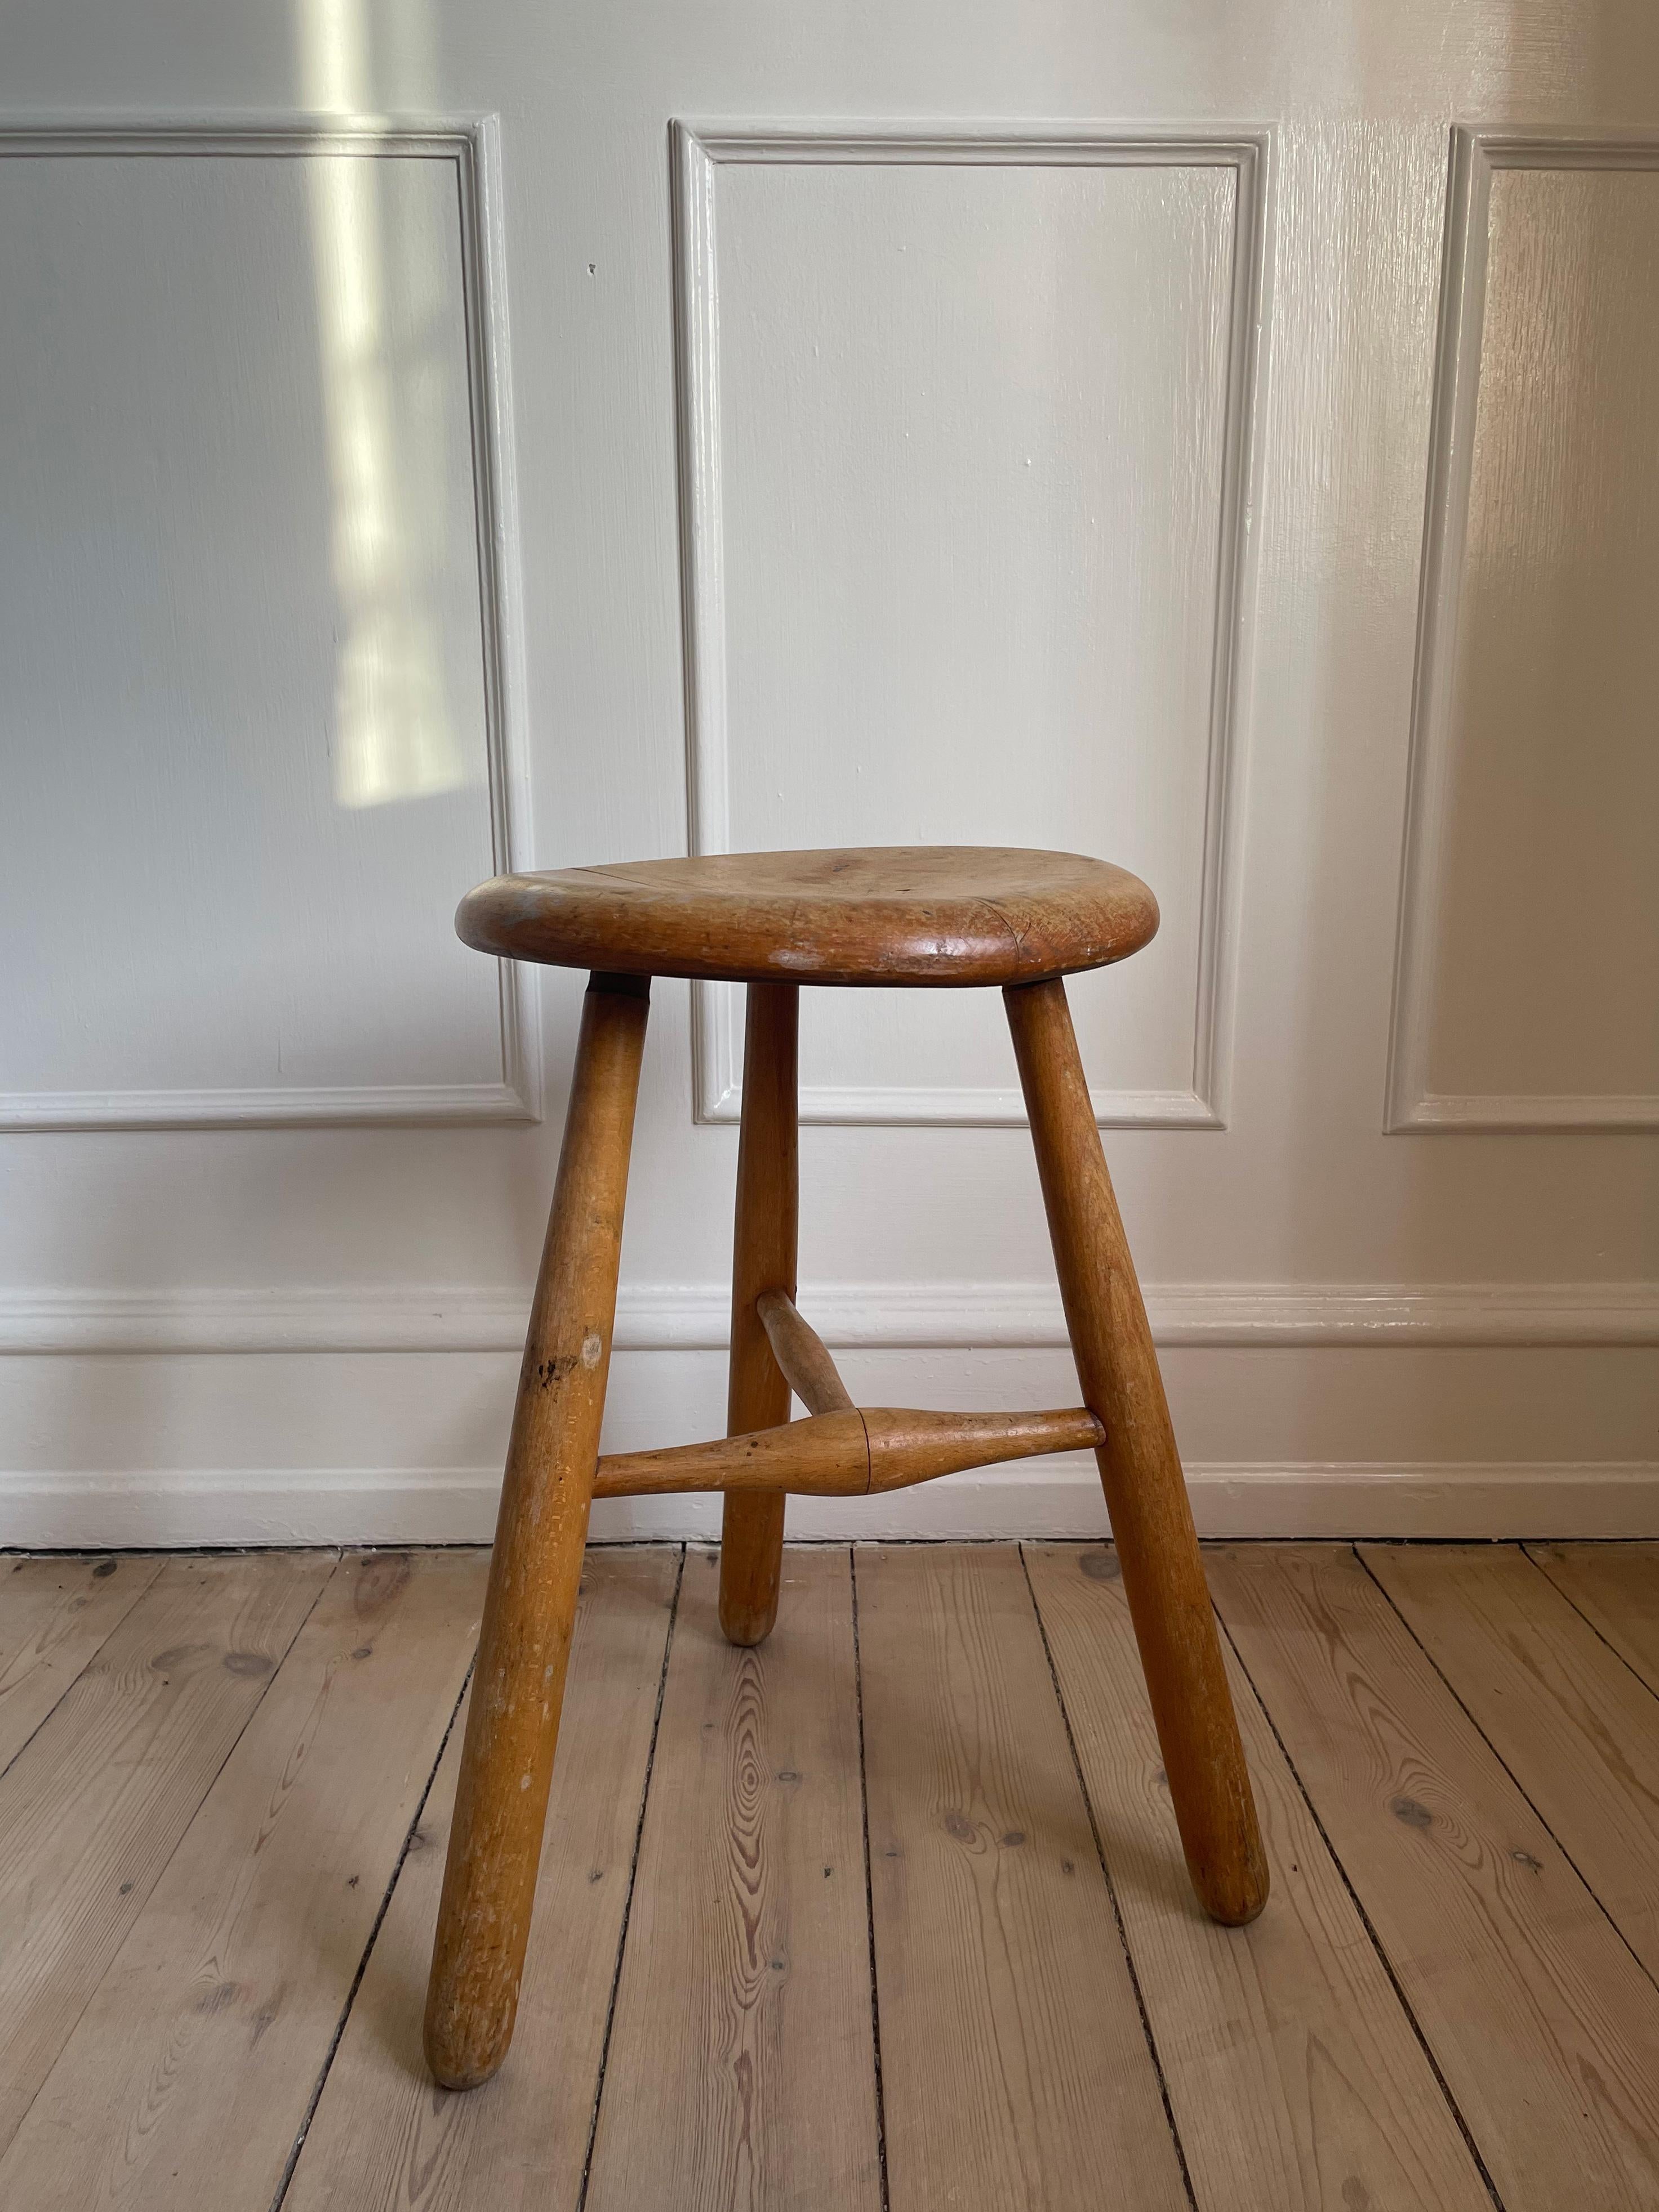 Tabouret ou table d'appoint en bois rustique de style bohème à trois pieds. Entièrement stable avec patine et signes d'usure et d'âge. Fabriqué en Suède dans les années 1950.